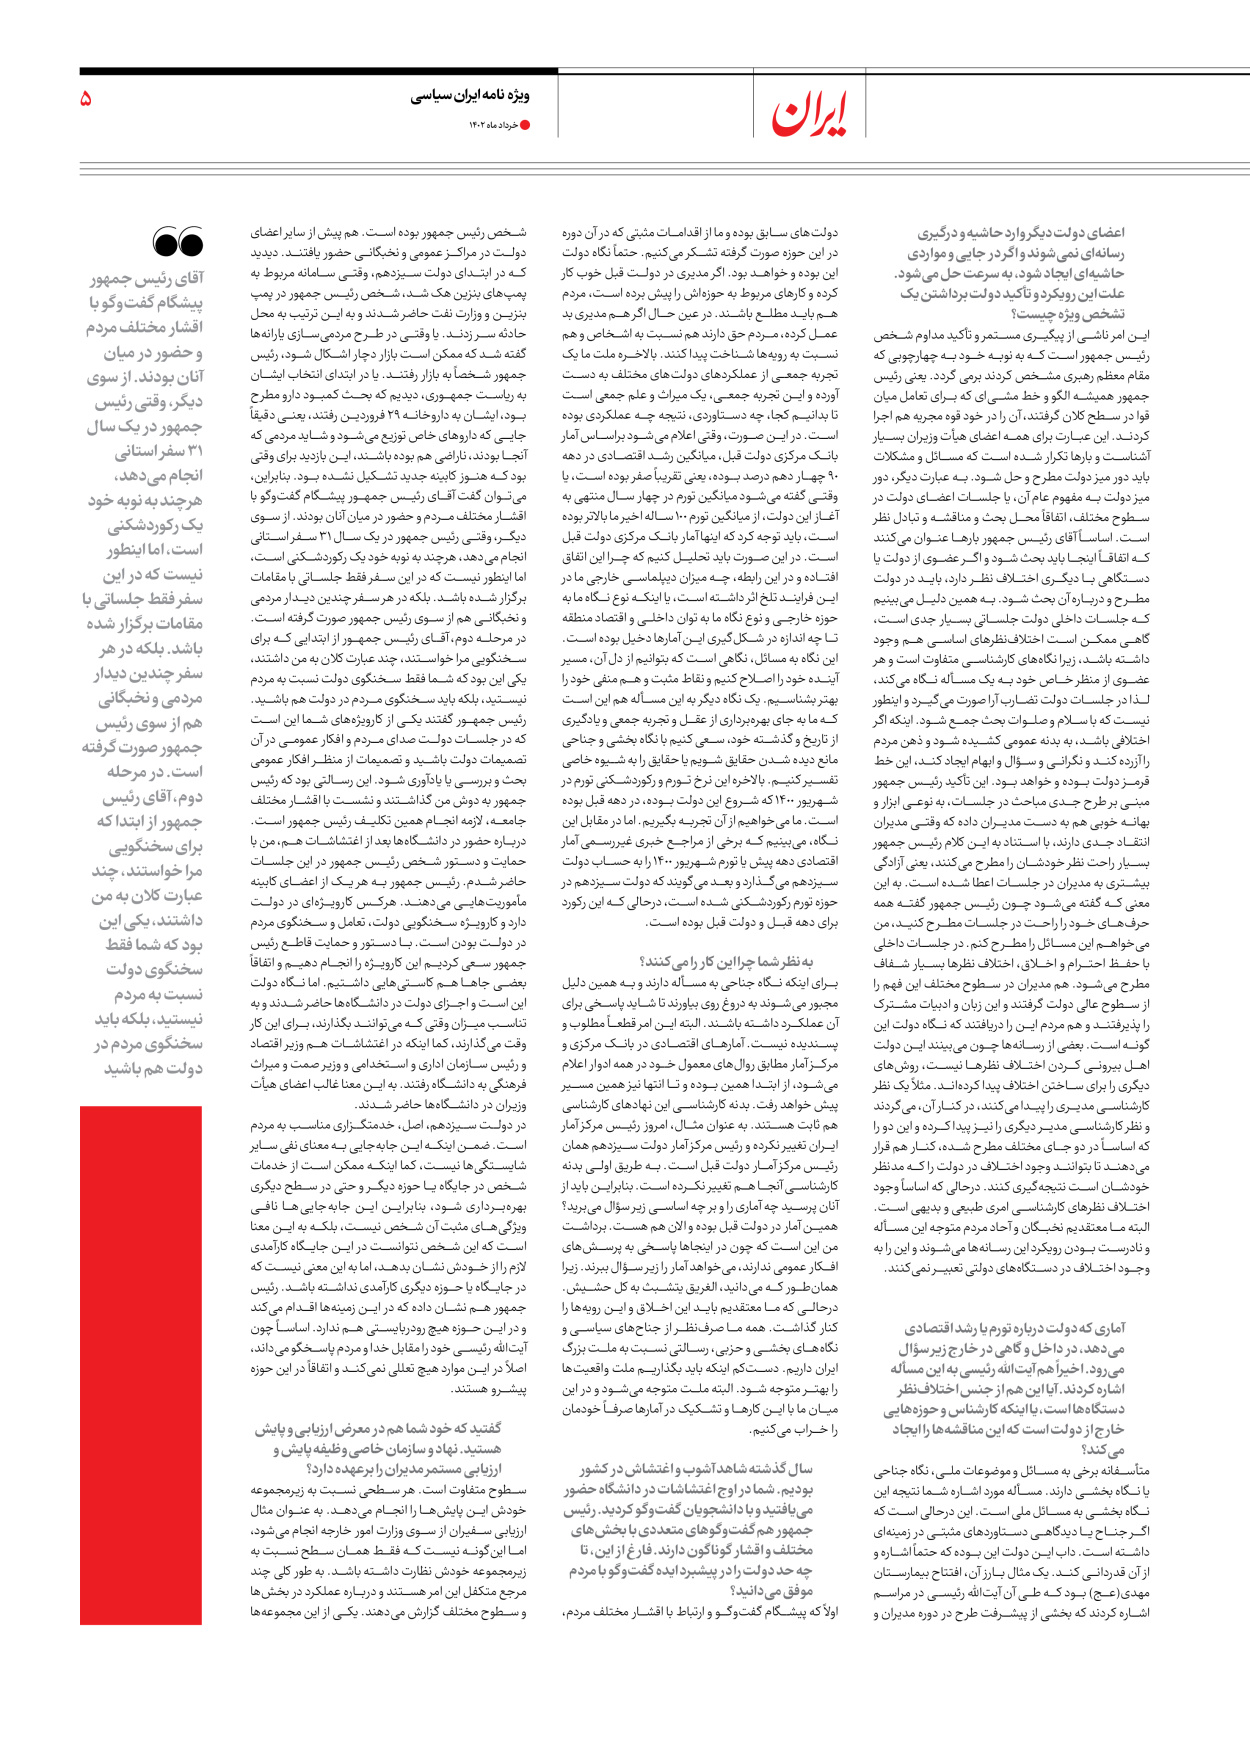 روزنامه ایران - ویژه نامه ویژه سالگرد انتخابات ریاست جمهوری - ۲۸ خرداد ۱۴۰۲ - صفحه ۵